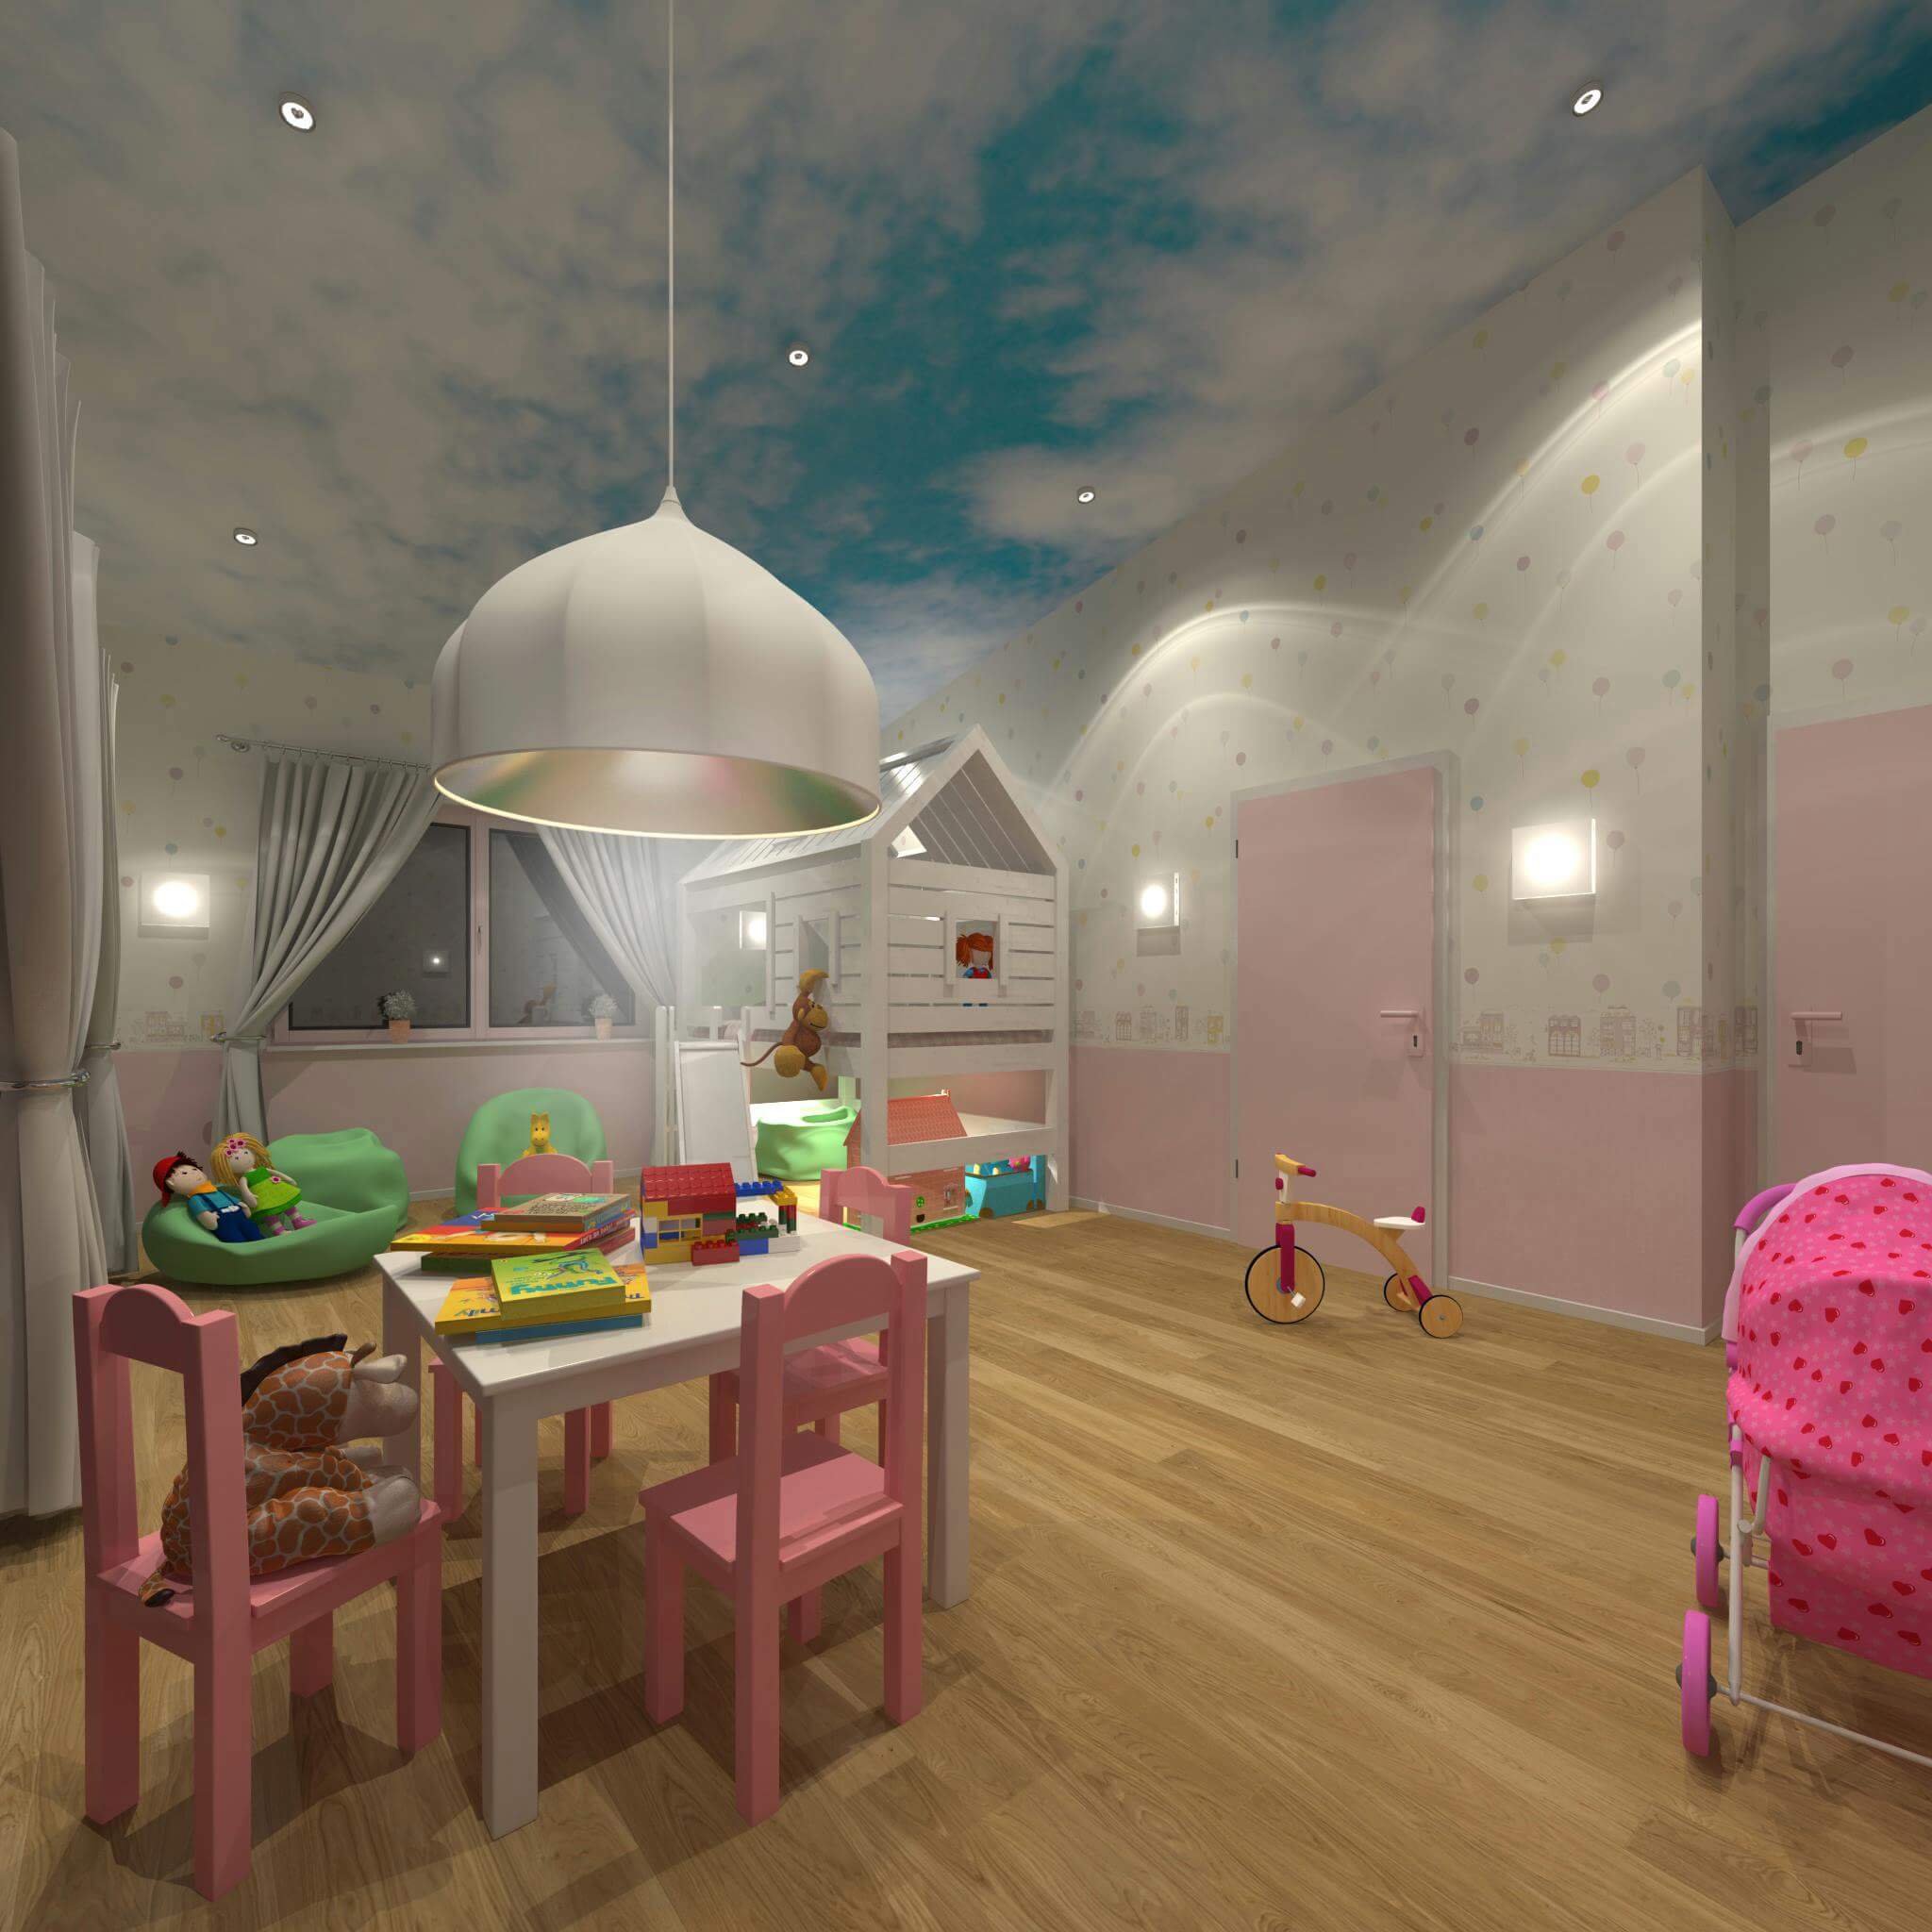 Kinderzimmer Design für kleine Mädchen mit Kindertisch, Puppenwagen und Spielhaus